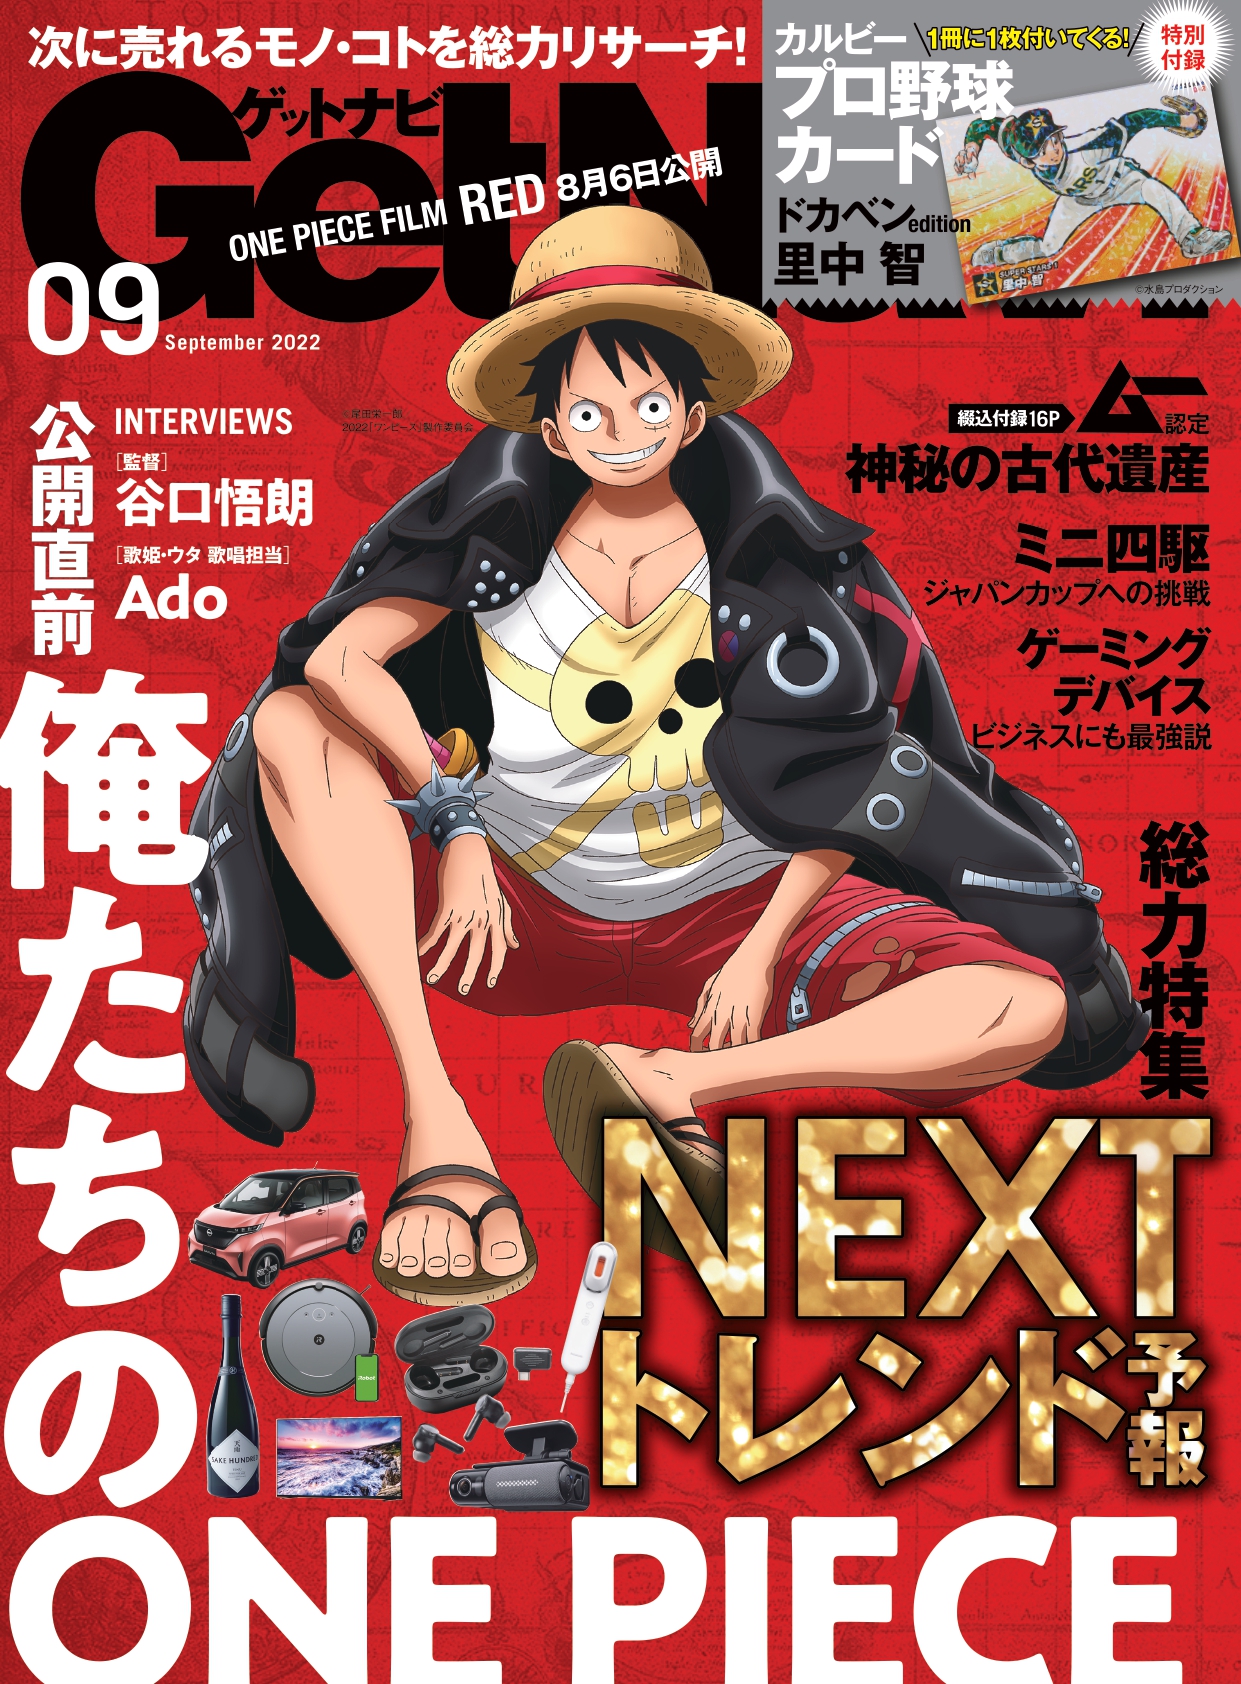 One Pieceの描き下ろしイラストが両面表紙に 総力特集は次に来るモノ コトを徹底リサーチした Nextトレンド予測 ゲットナビ9月号は7月23日発売 Newscast